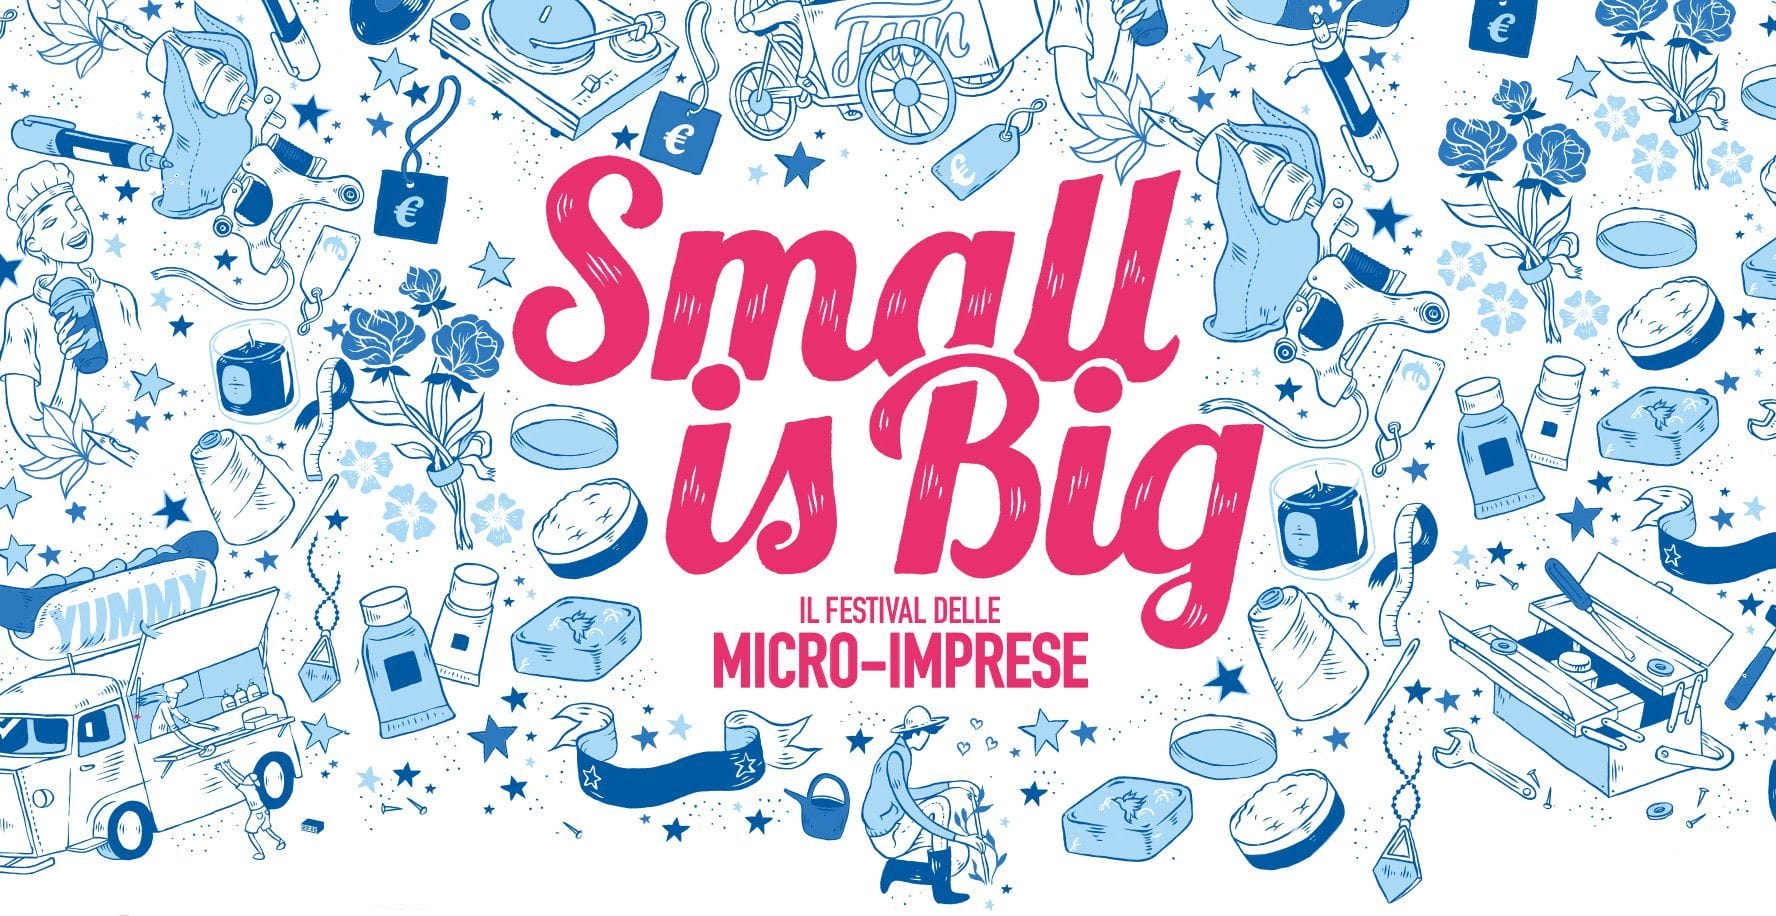 Small is Big : quando la micro imprenditoria diventa un grande valore.